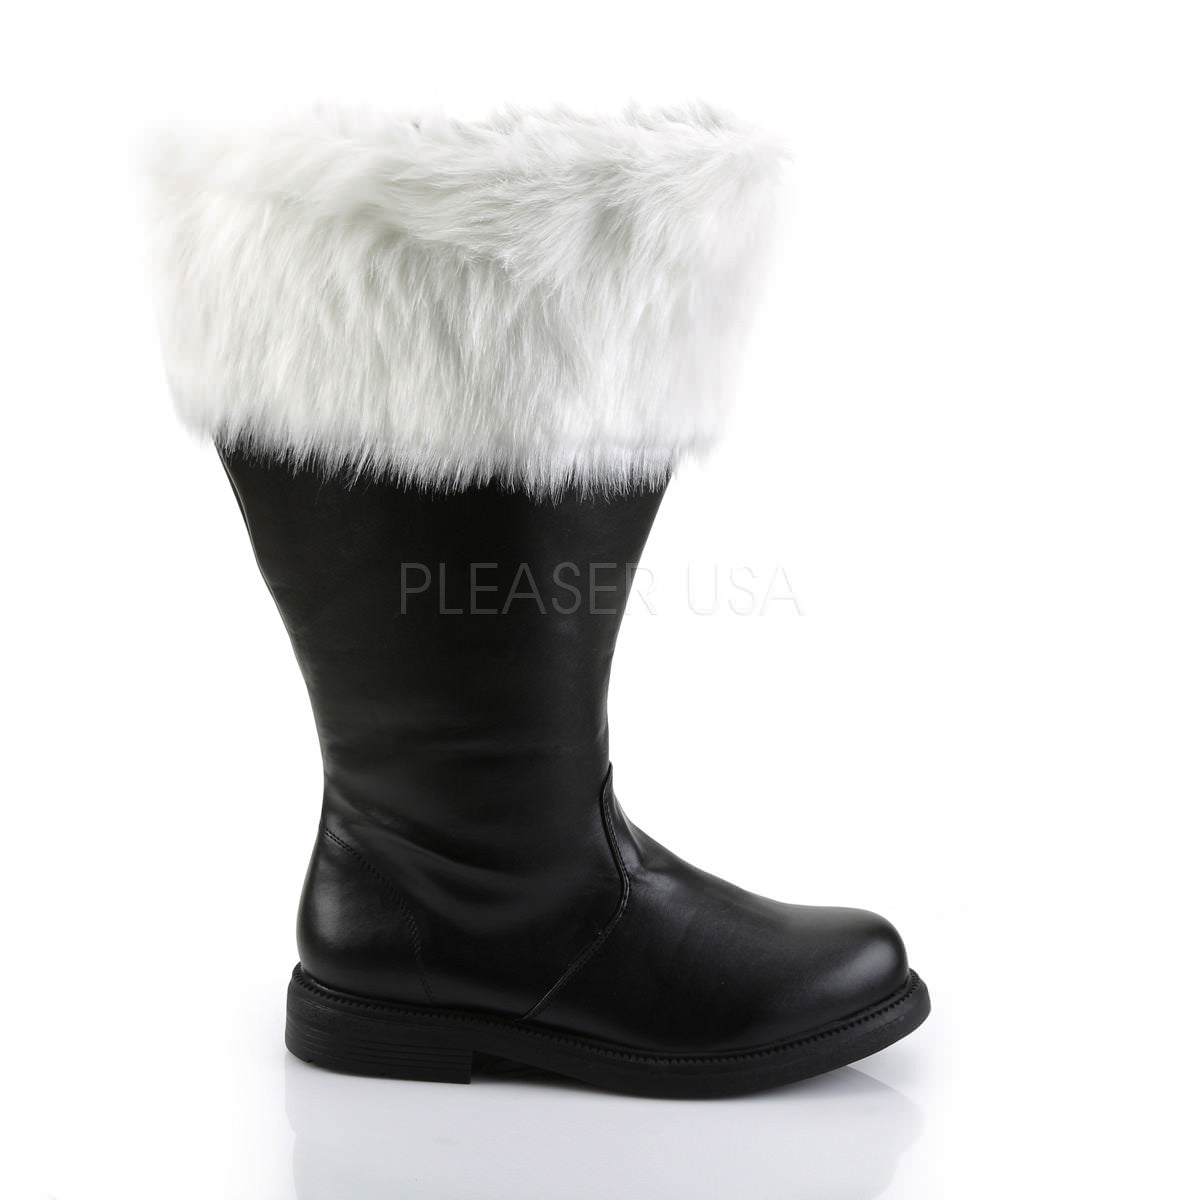 Men's Black Pu Wide Calf Santa Boots with White Faux Fur – Shoecup.com